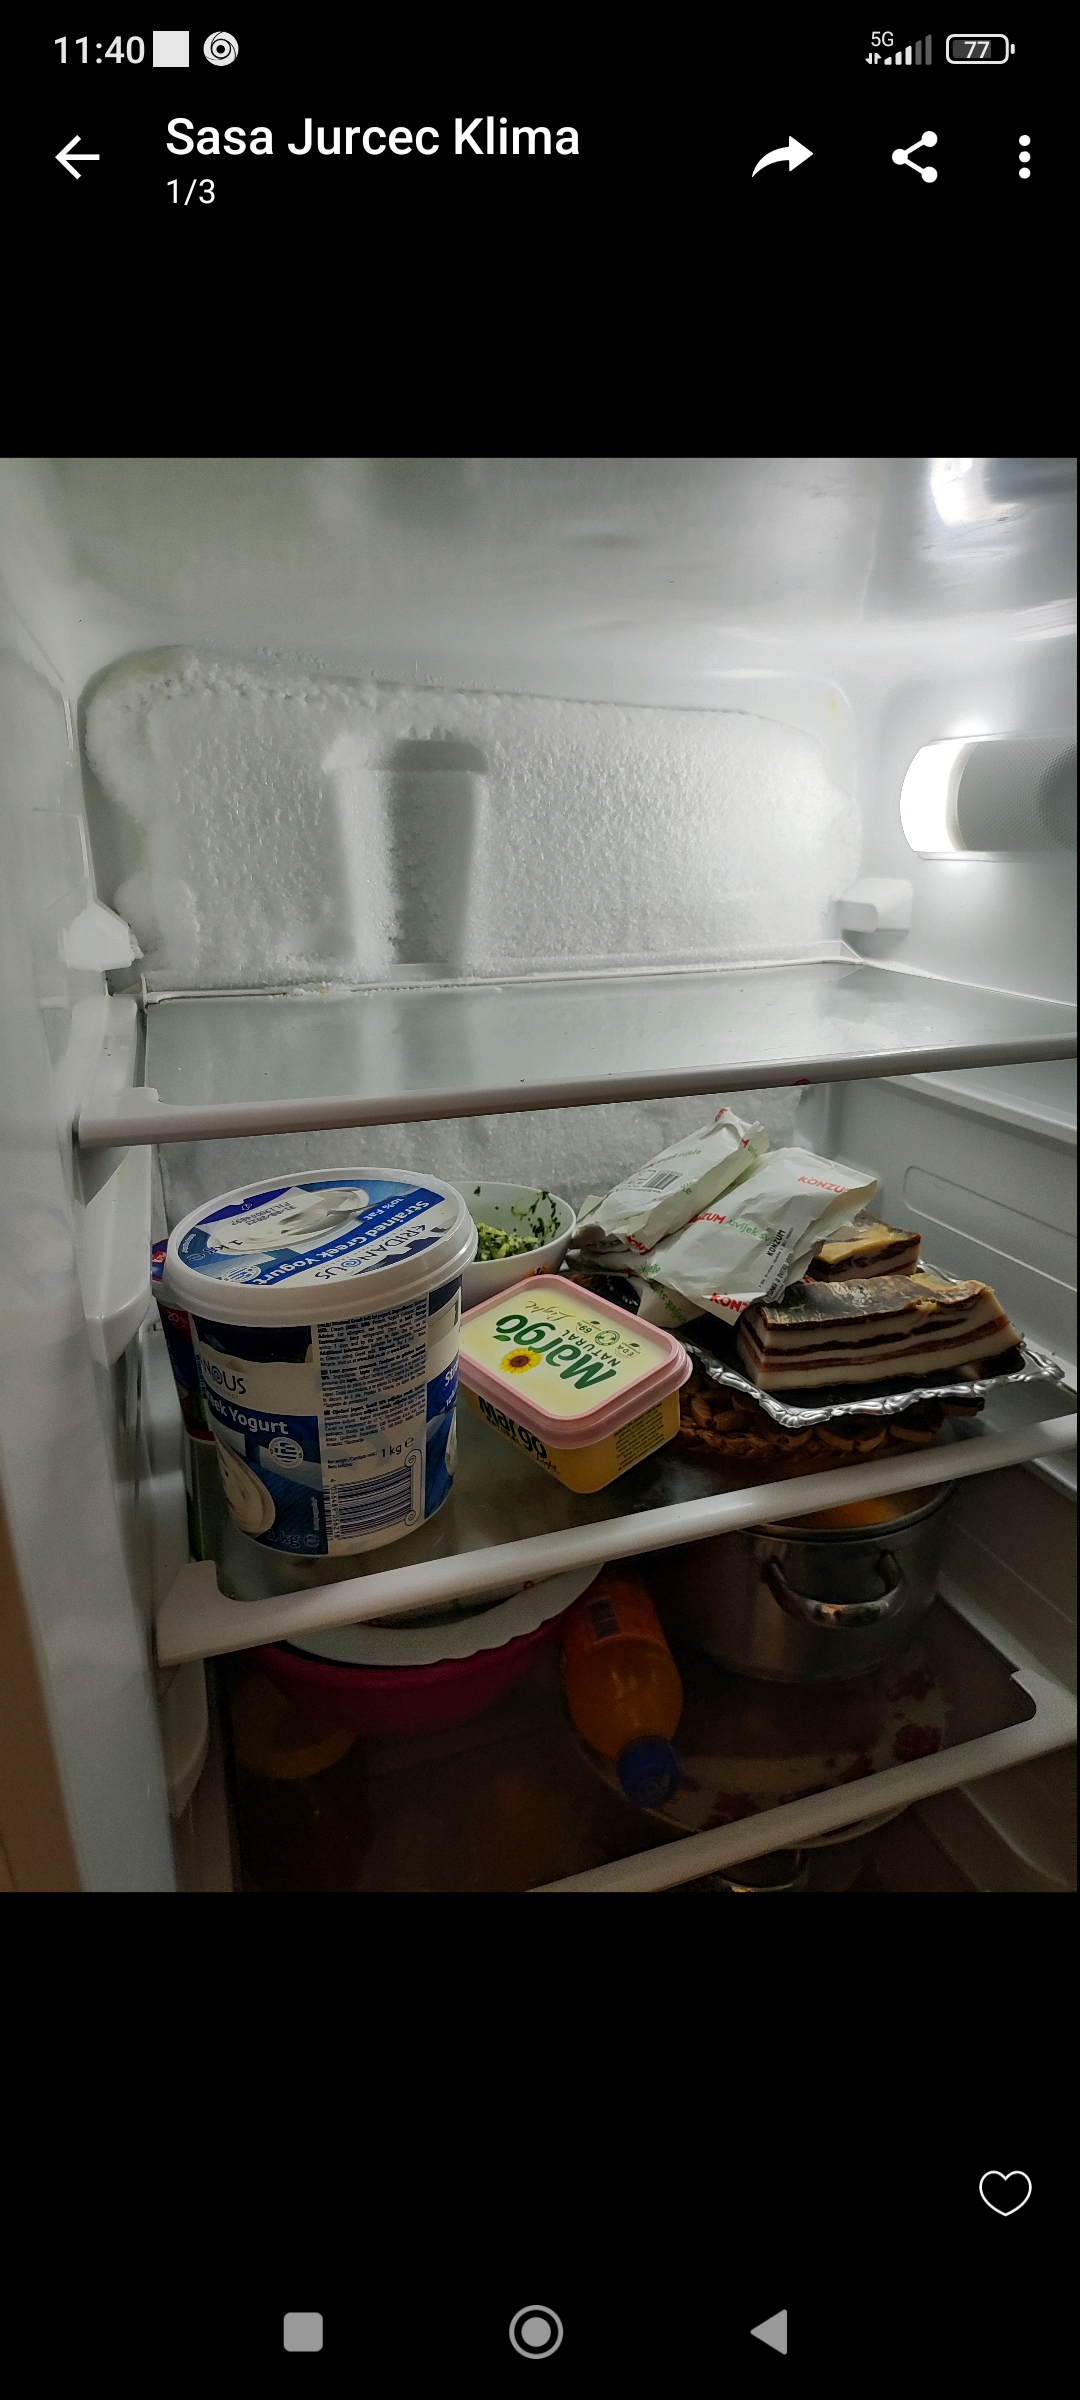 Forma-se gelo no fundo da geladeira
Imagem anexada
O que fazer?